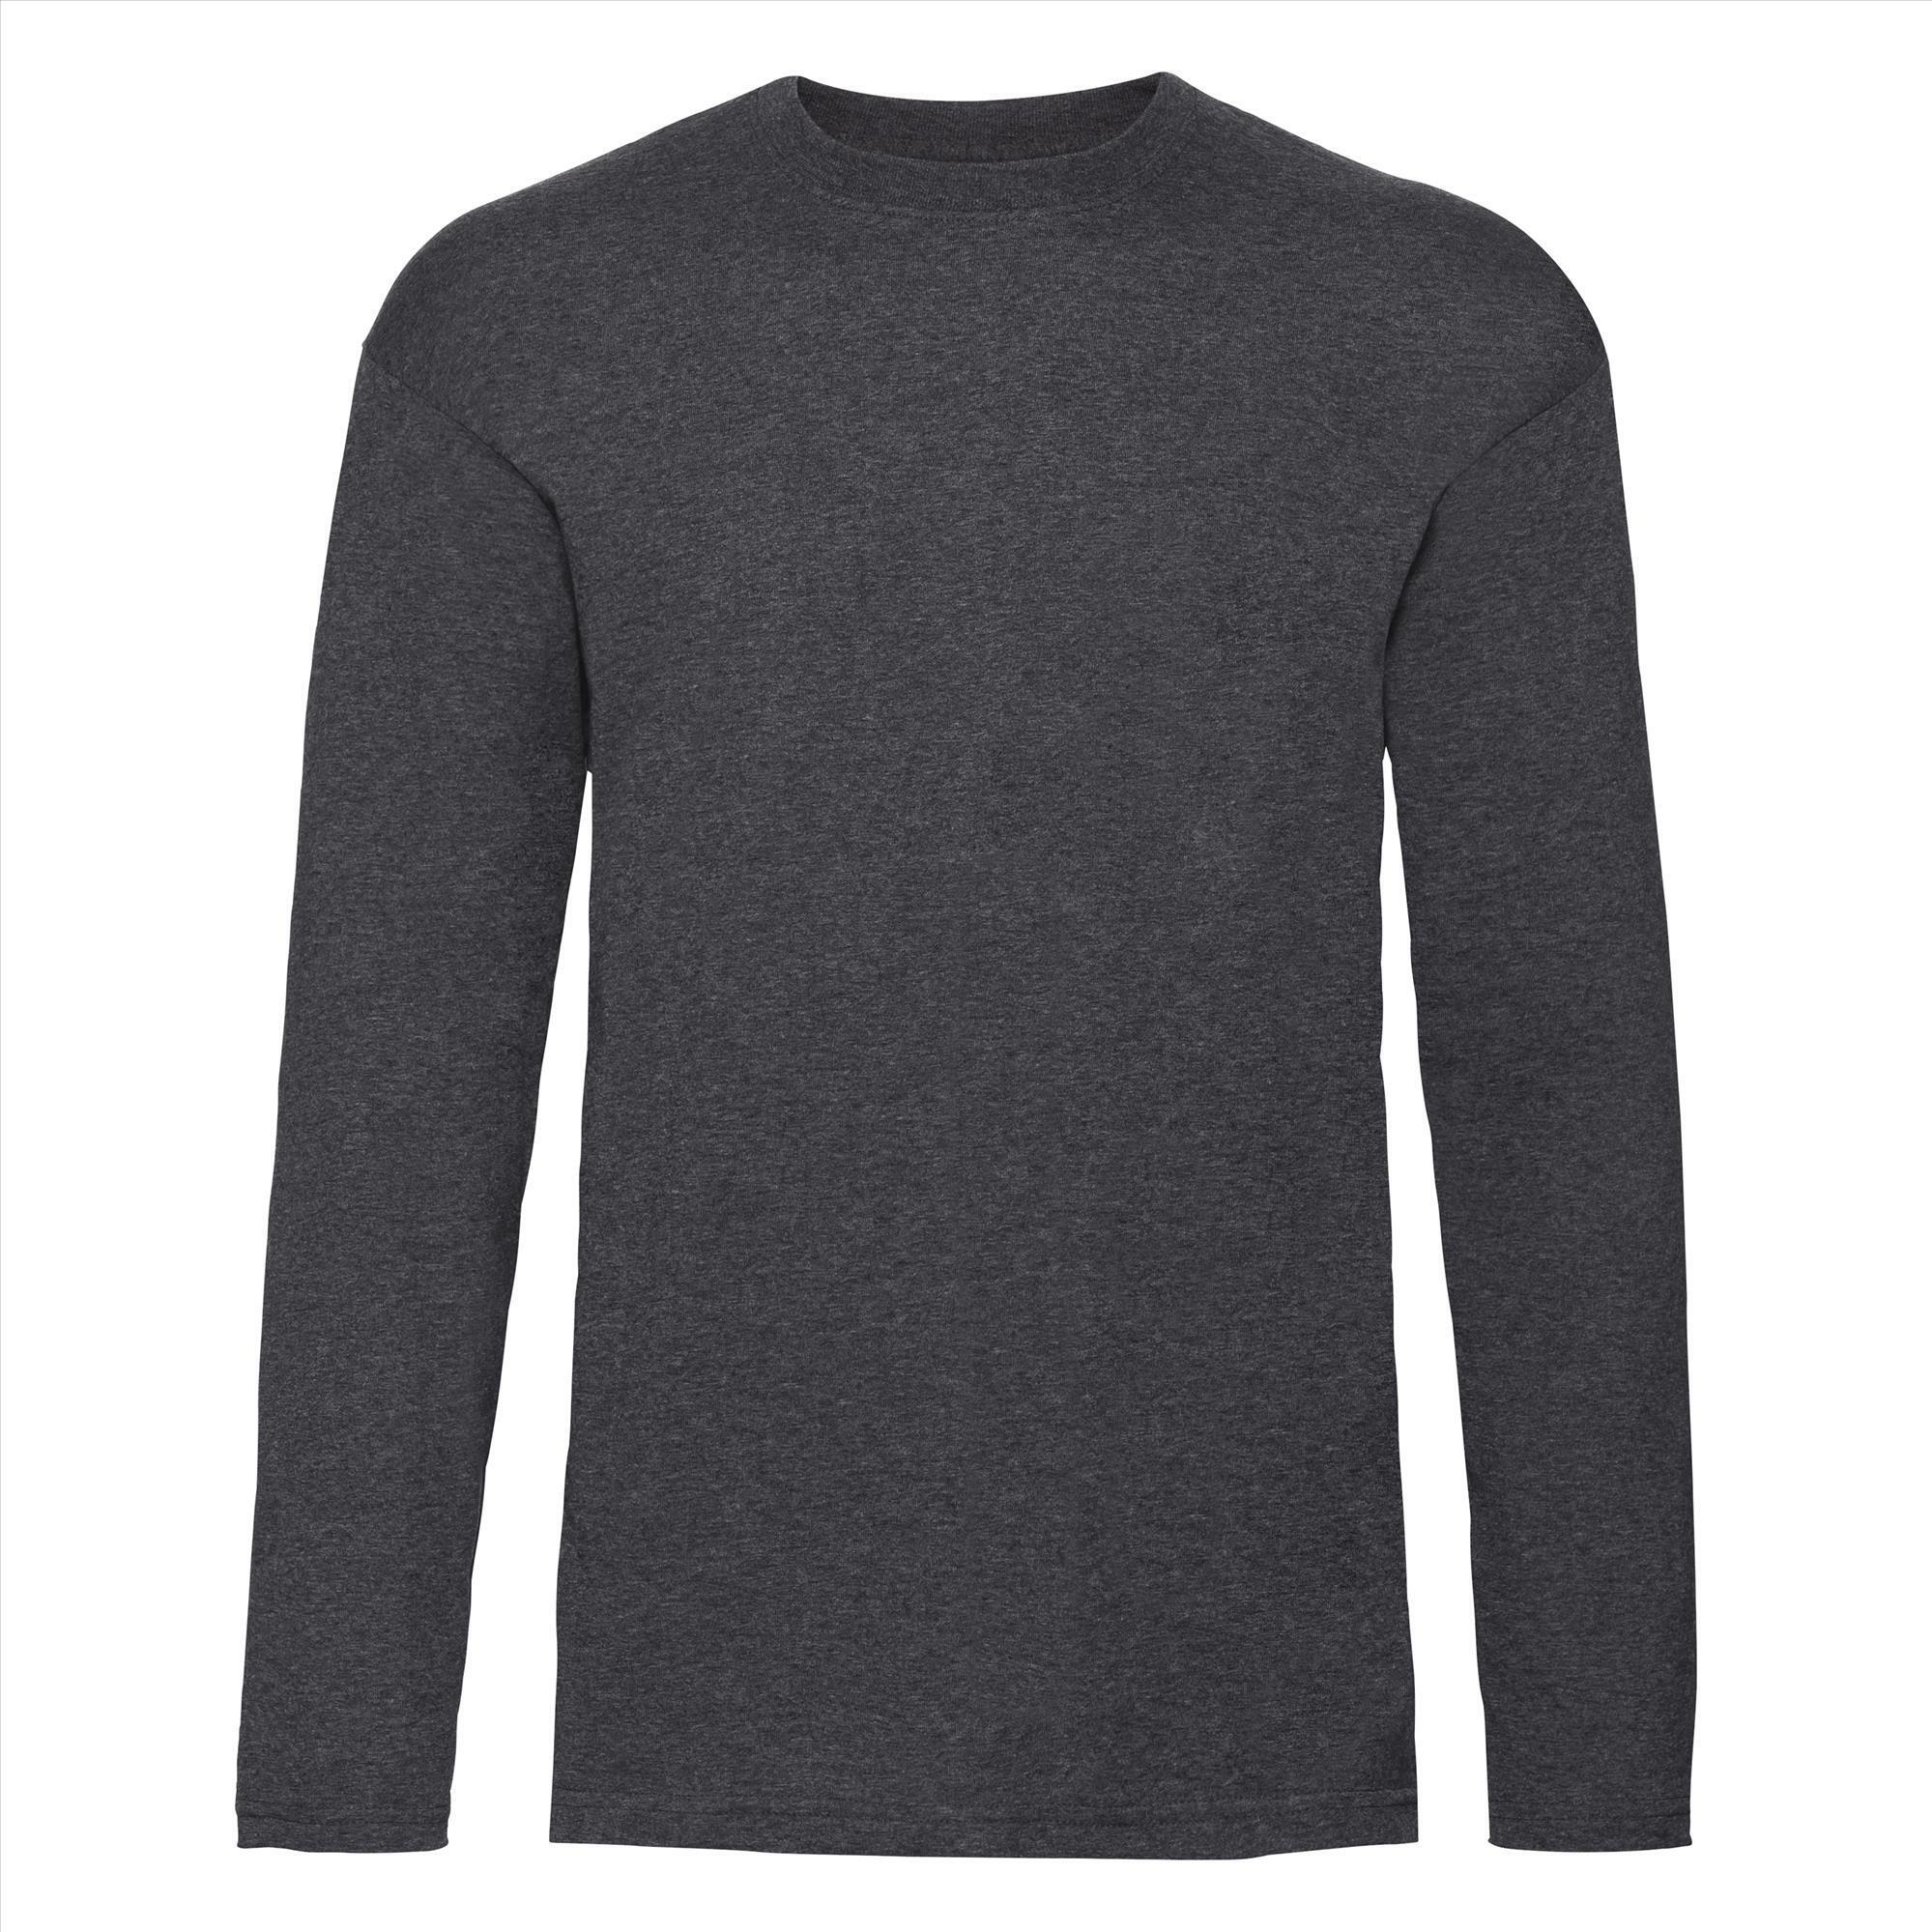 T-shirt donker gemêleerd grijs lange mouwen voor mannen bedrukbaar te personaliseren